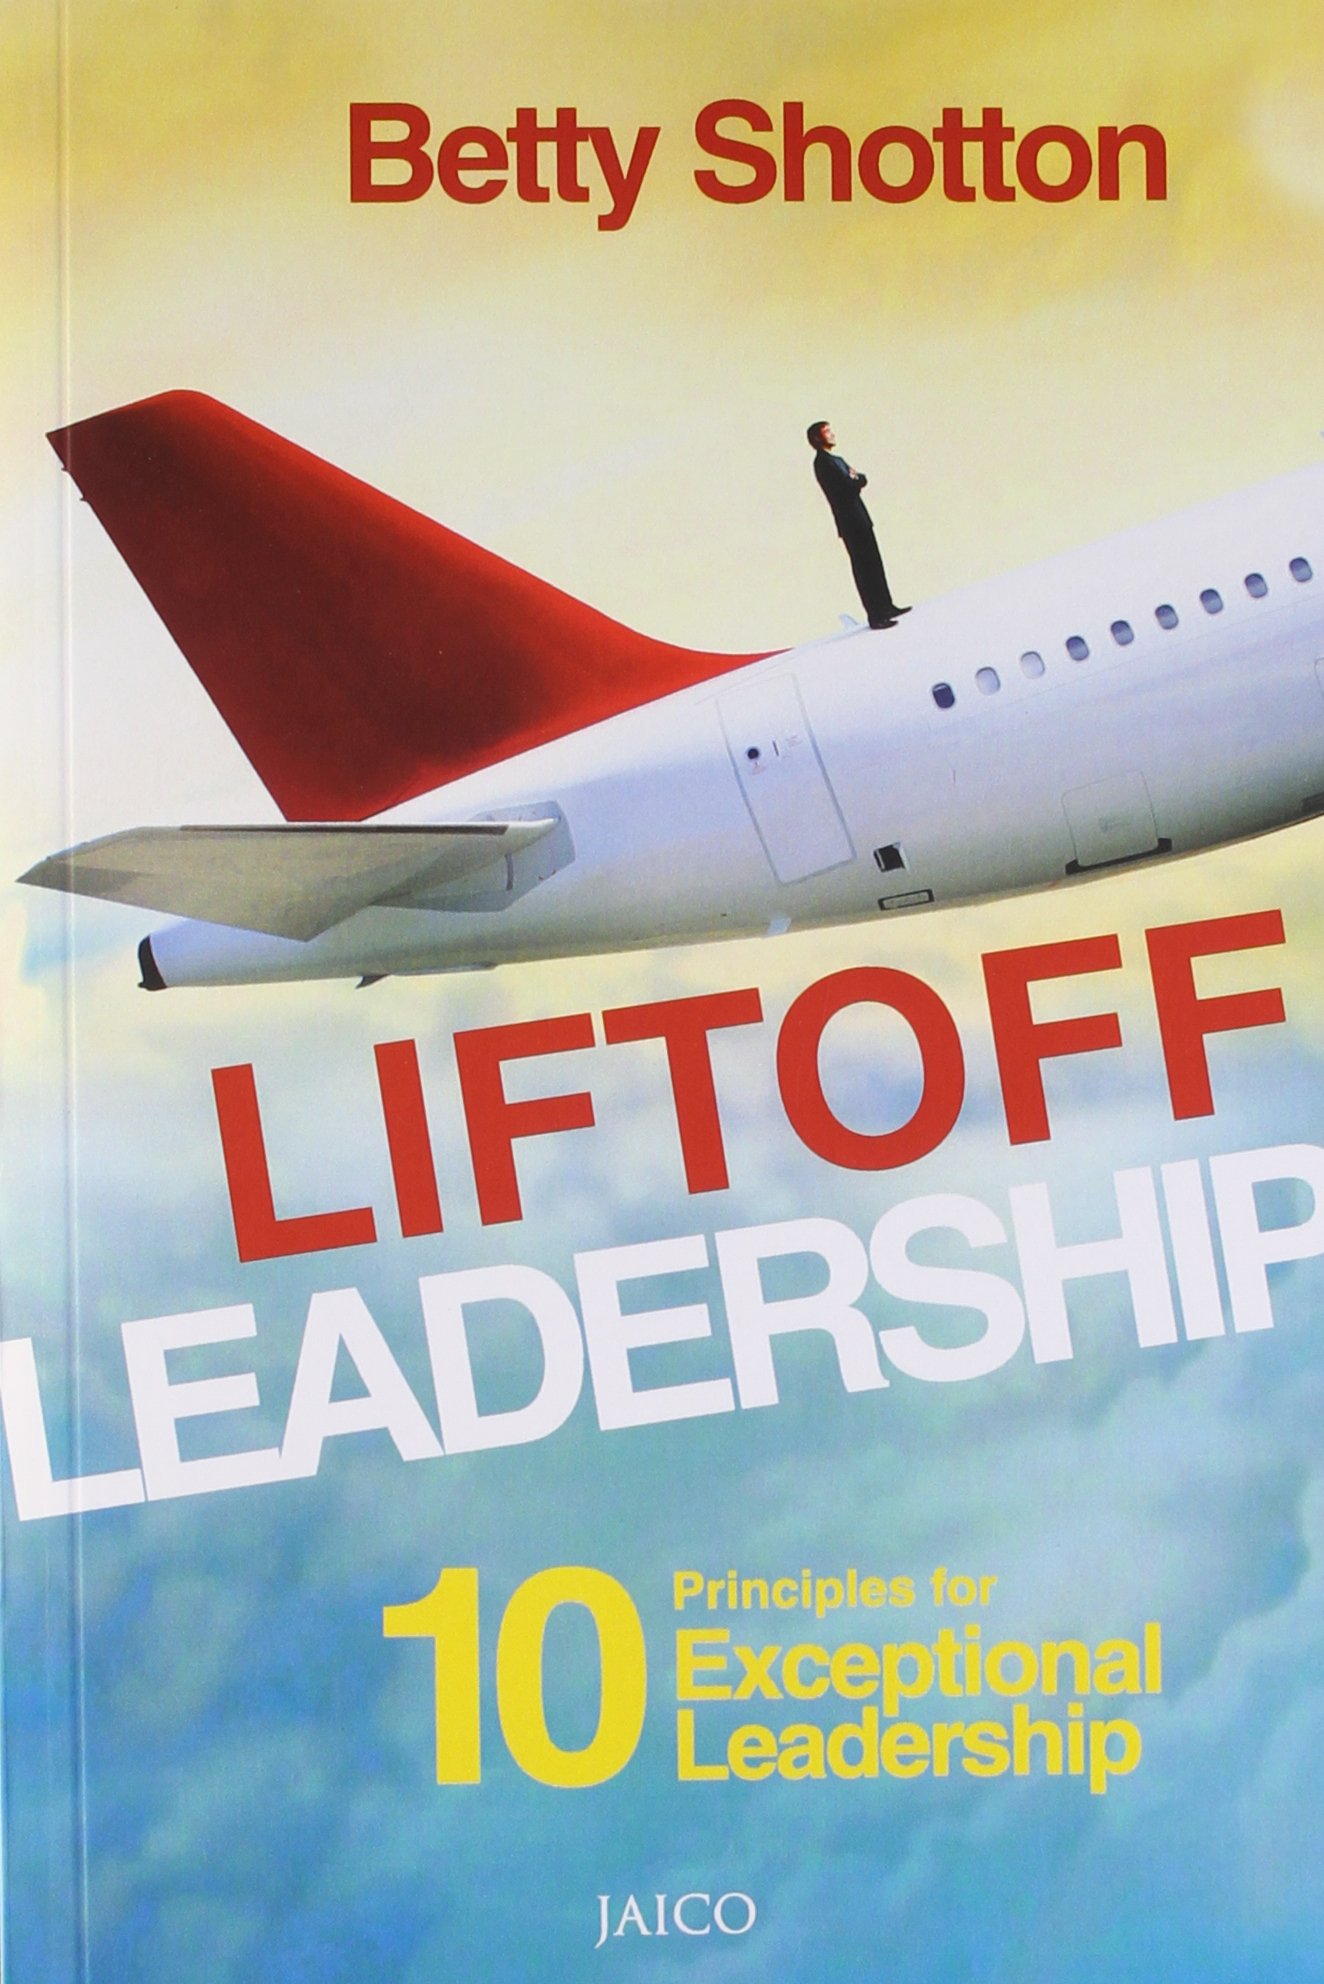 Liftoff Leadership